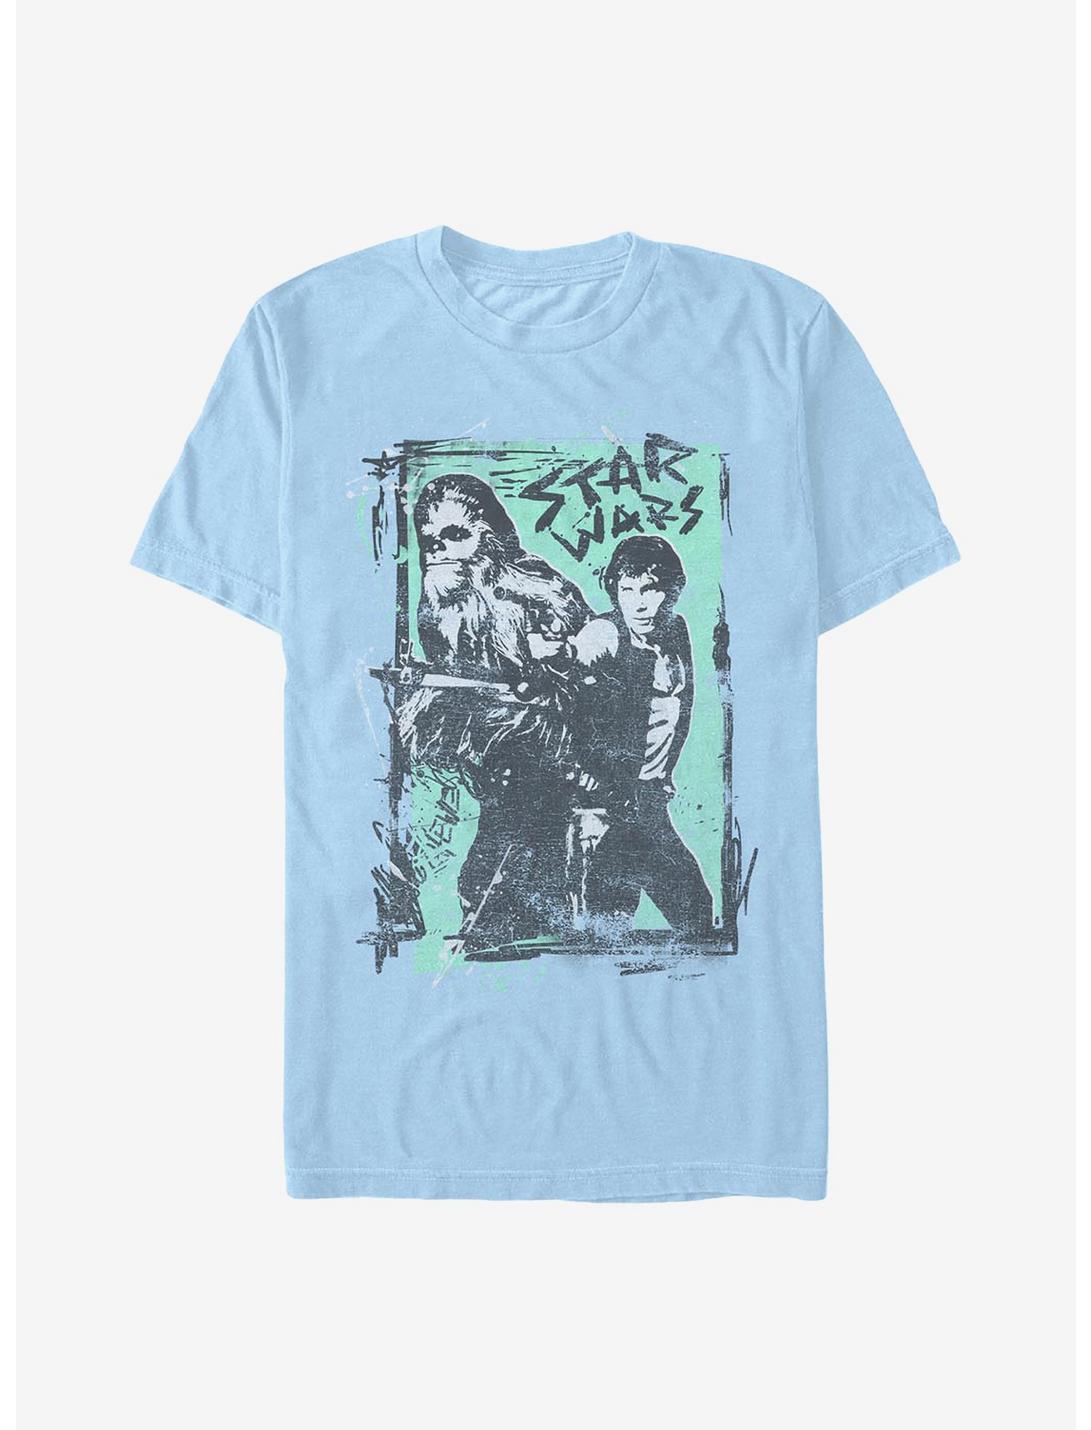 Star Wars Smug Bros T-Shirt, LT BLUE, hi-res